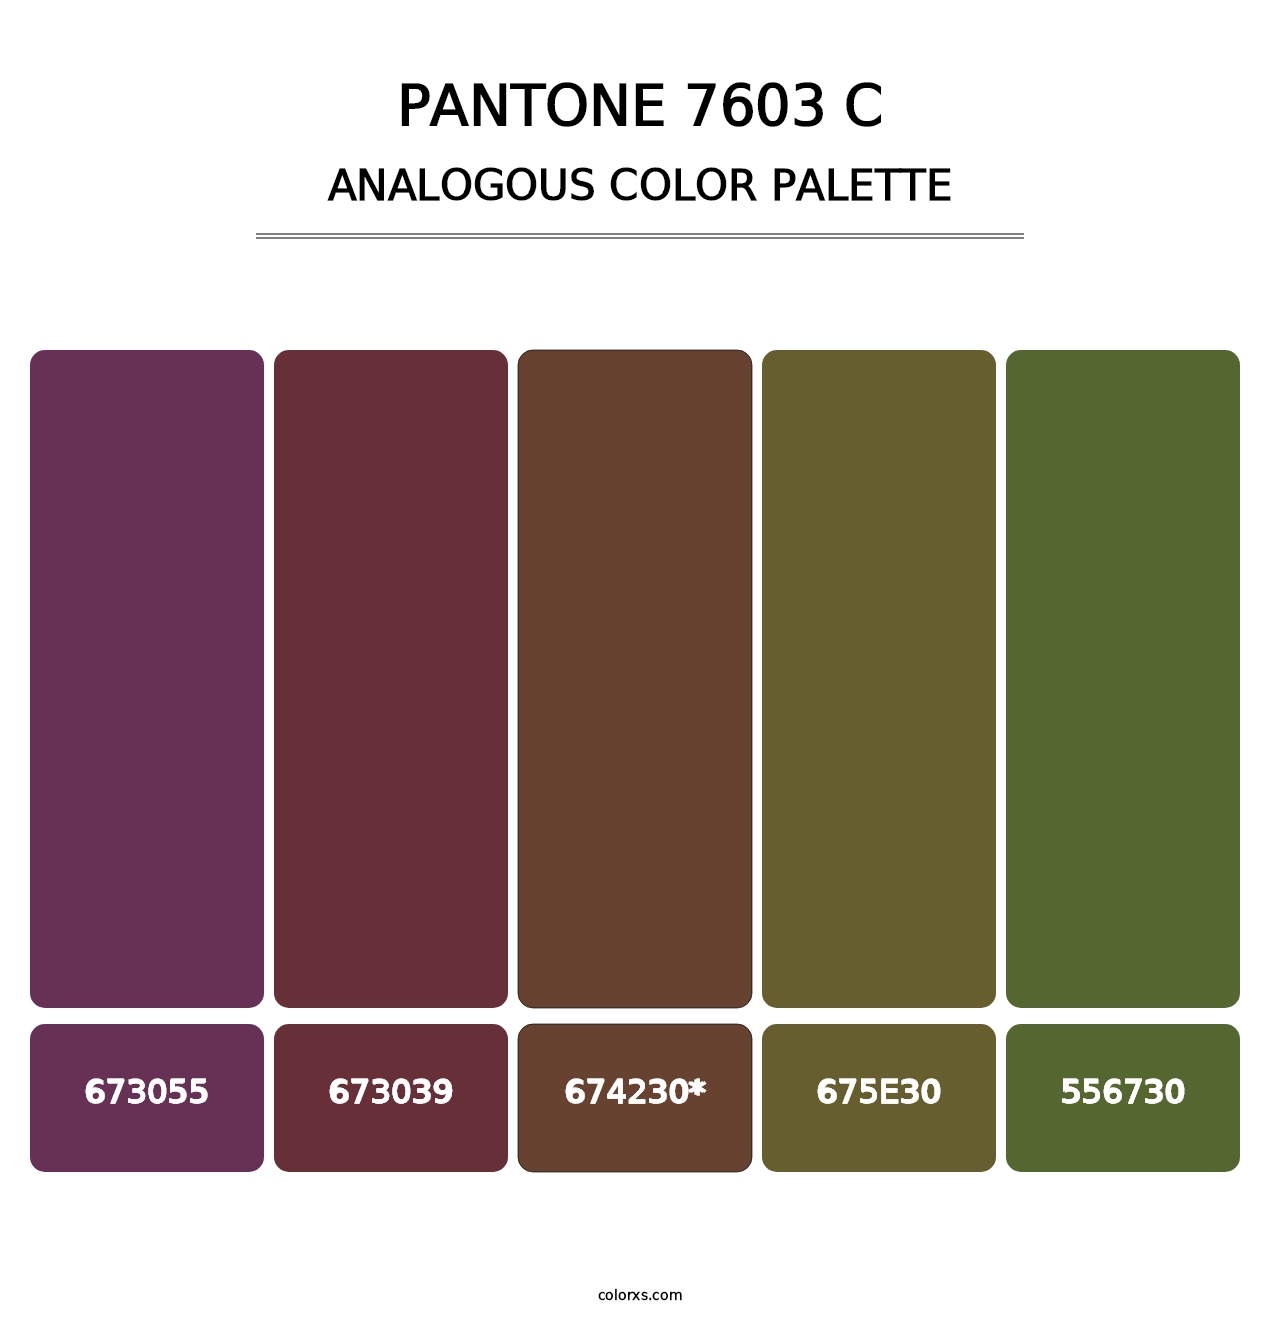 PANTONE 7603 C - Analogous Color Palette